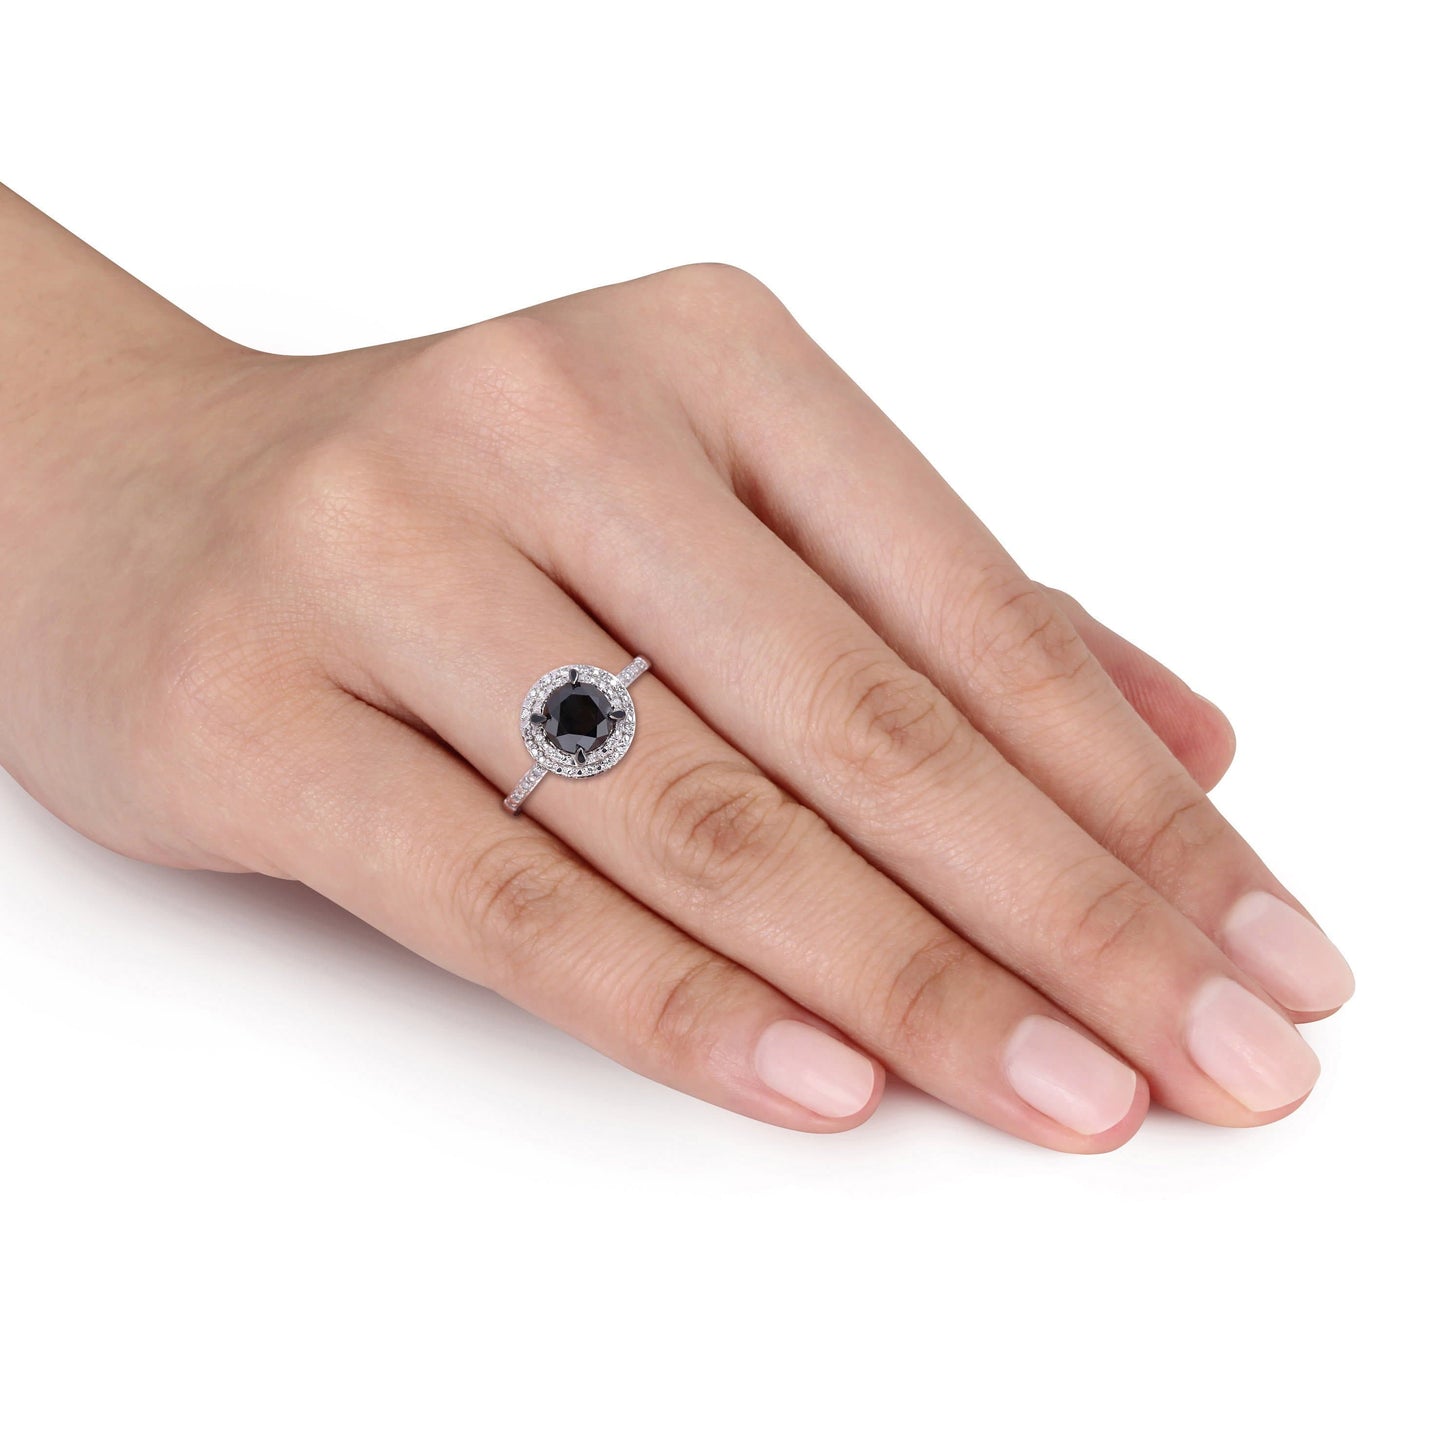 Julie Leah Black & White Diamond Ring in 14k White Gold